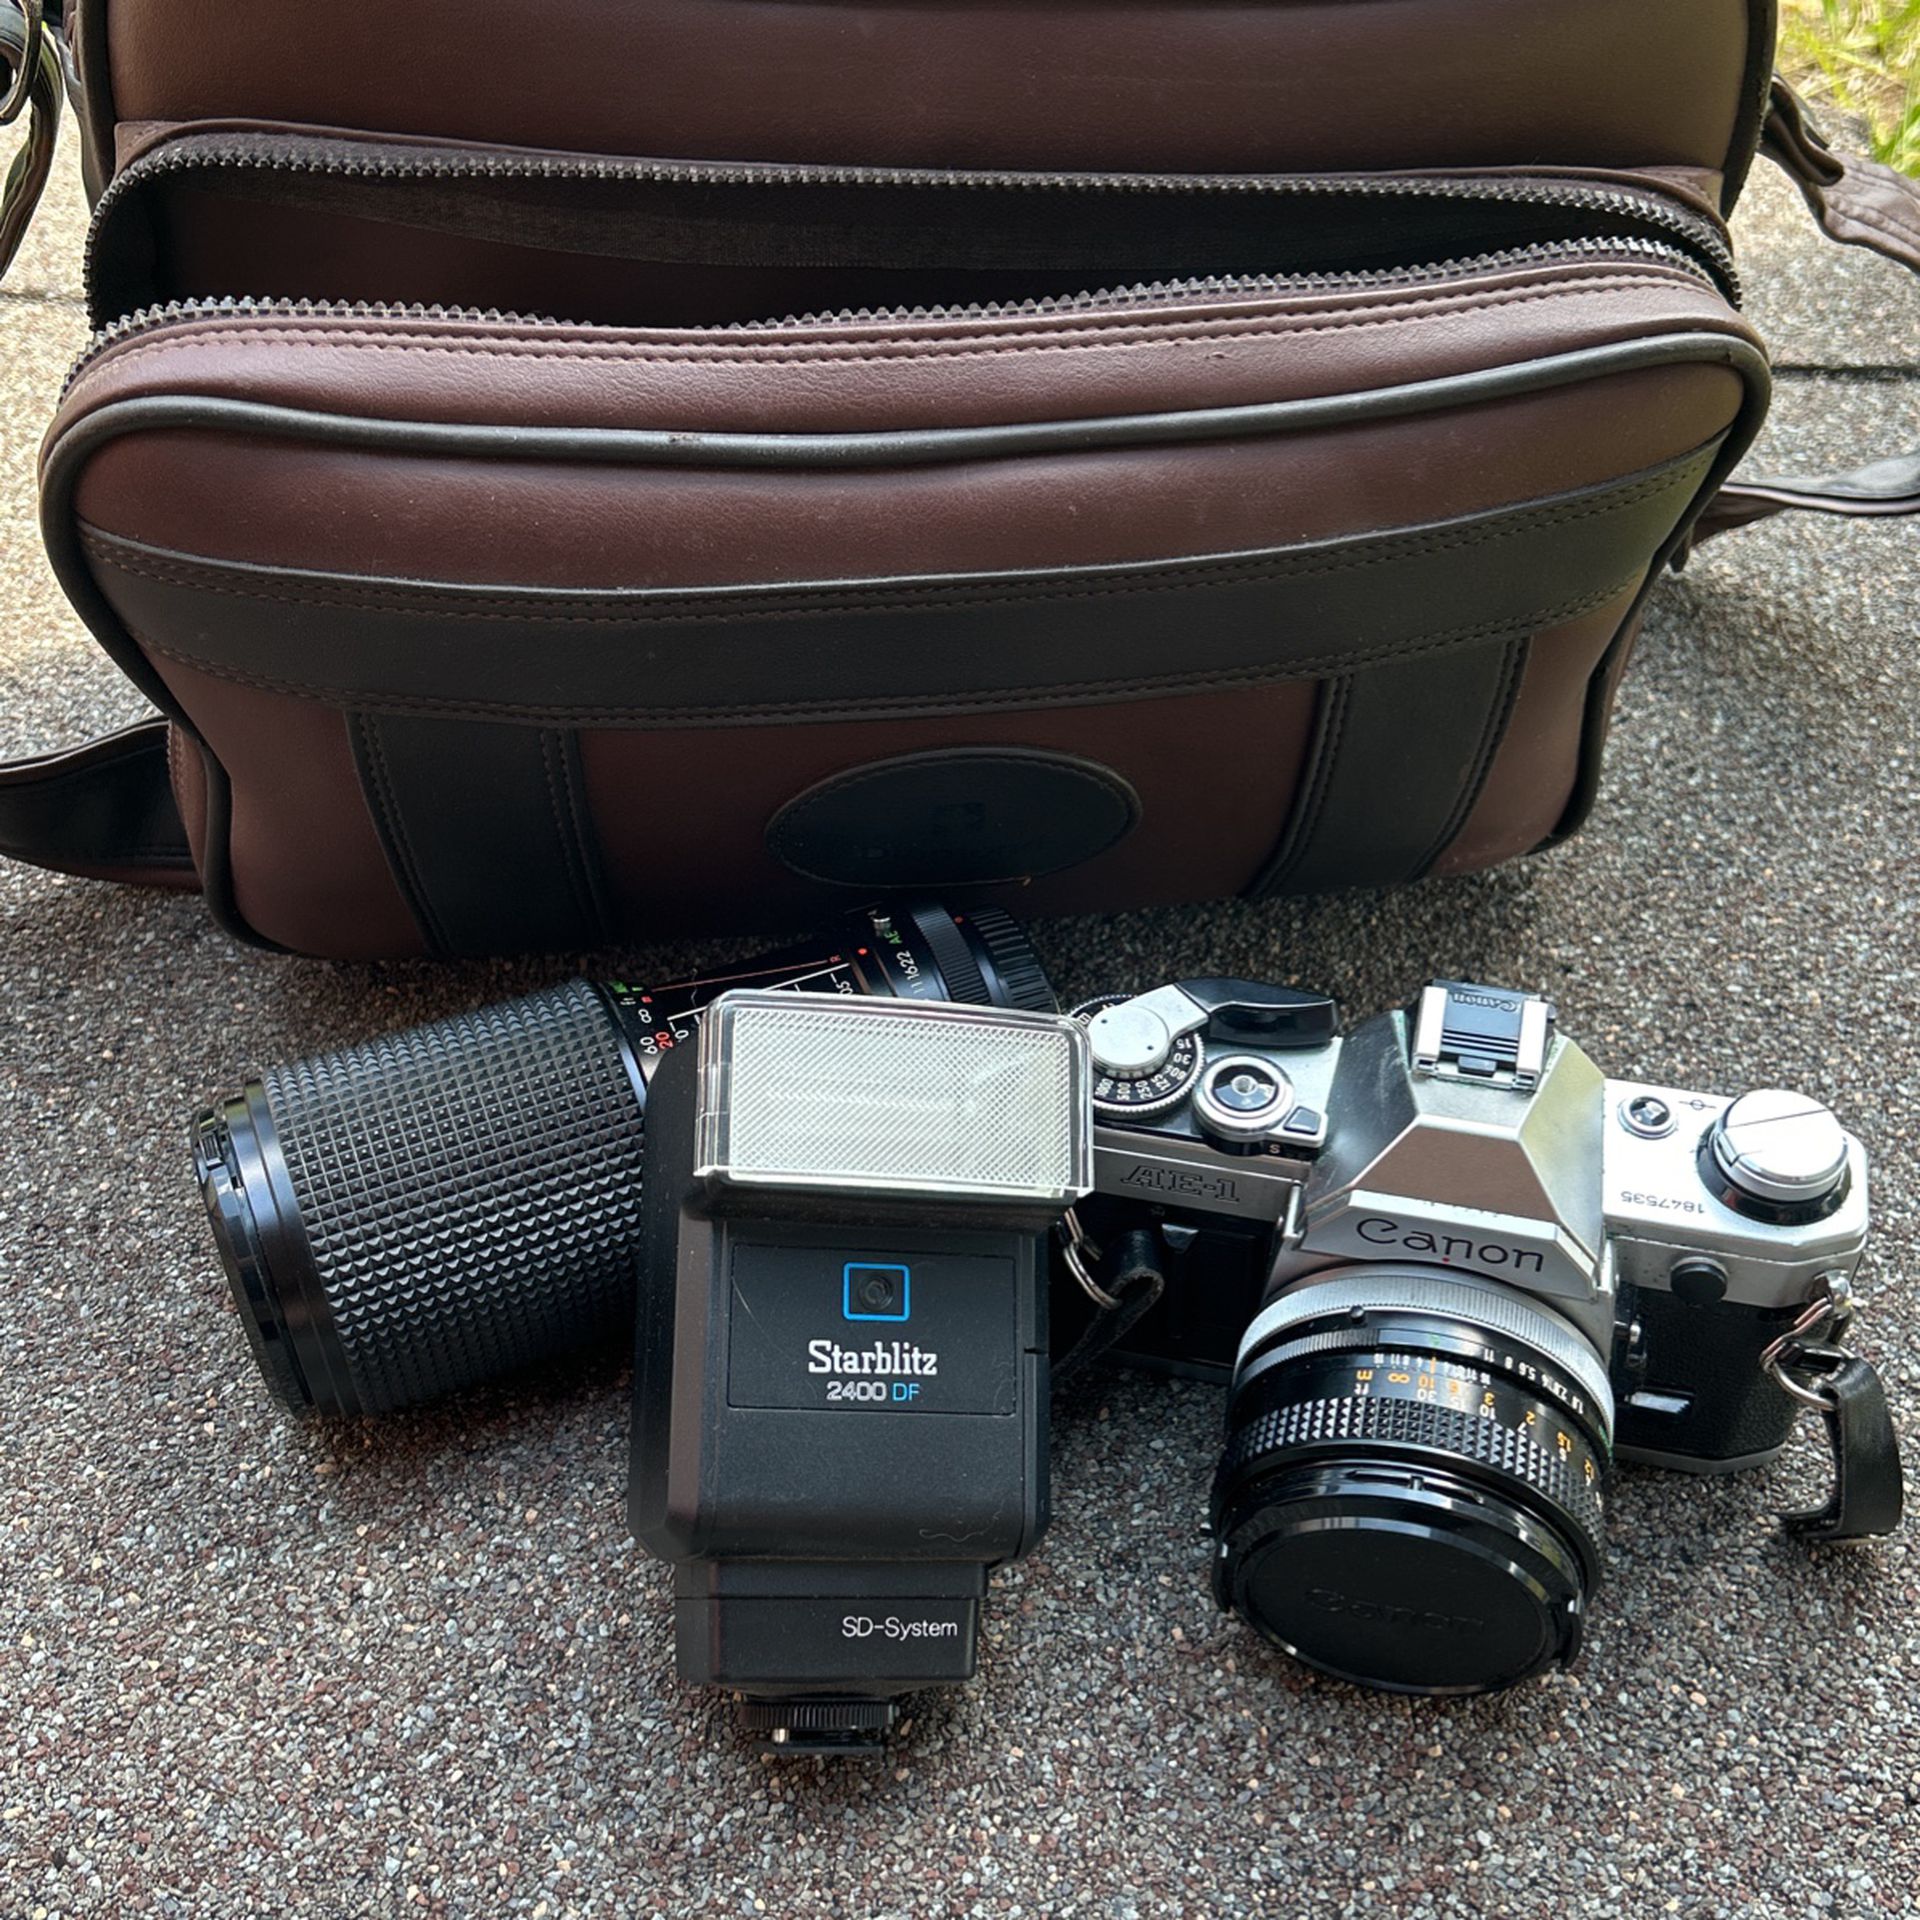 AE-1 Canon Camera And Accessories 